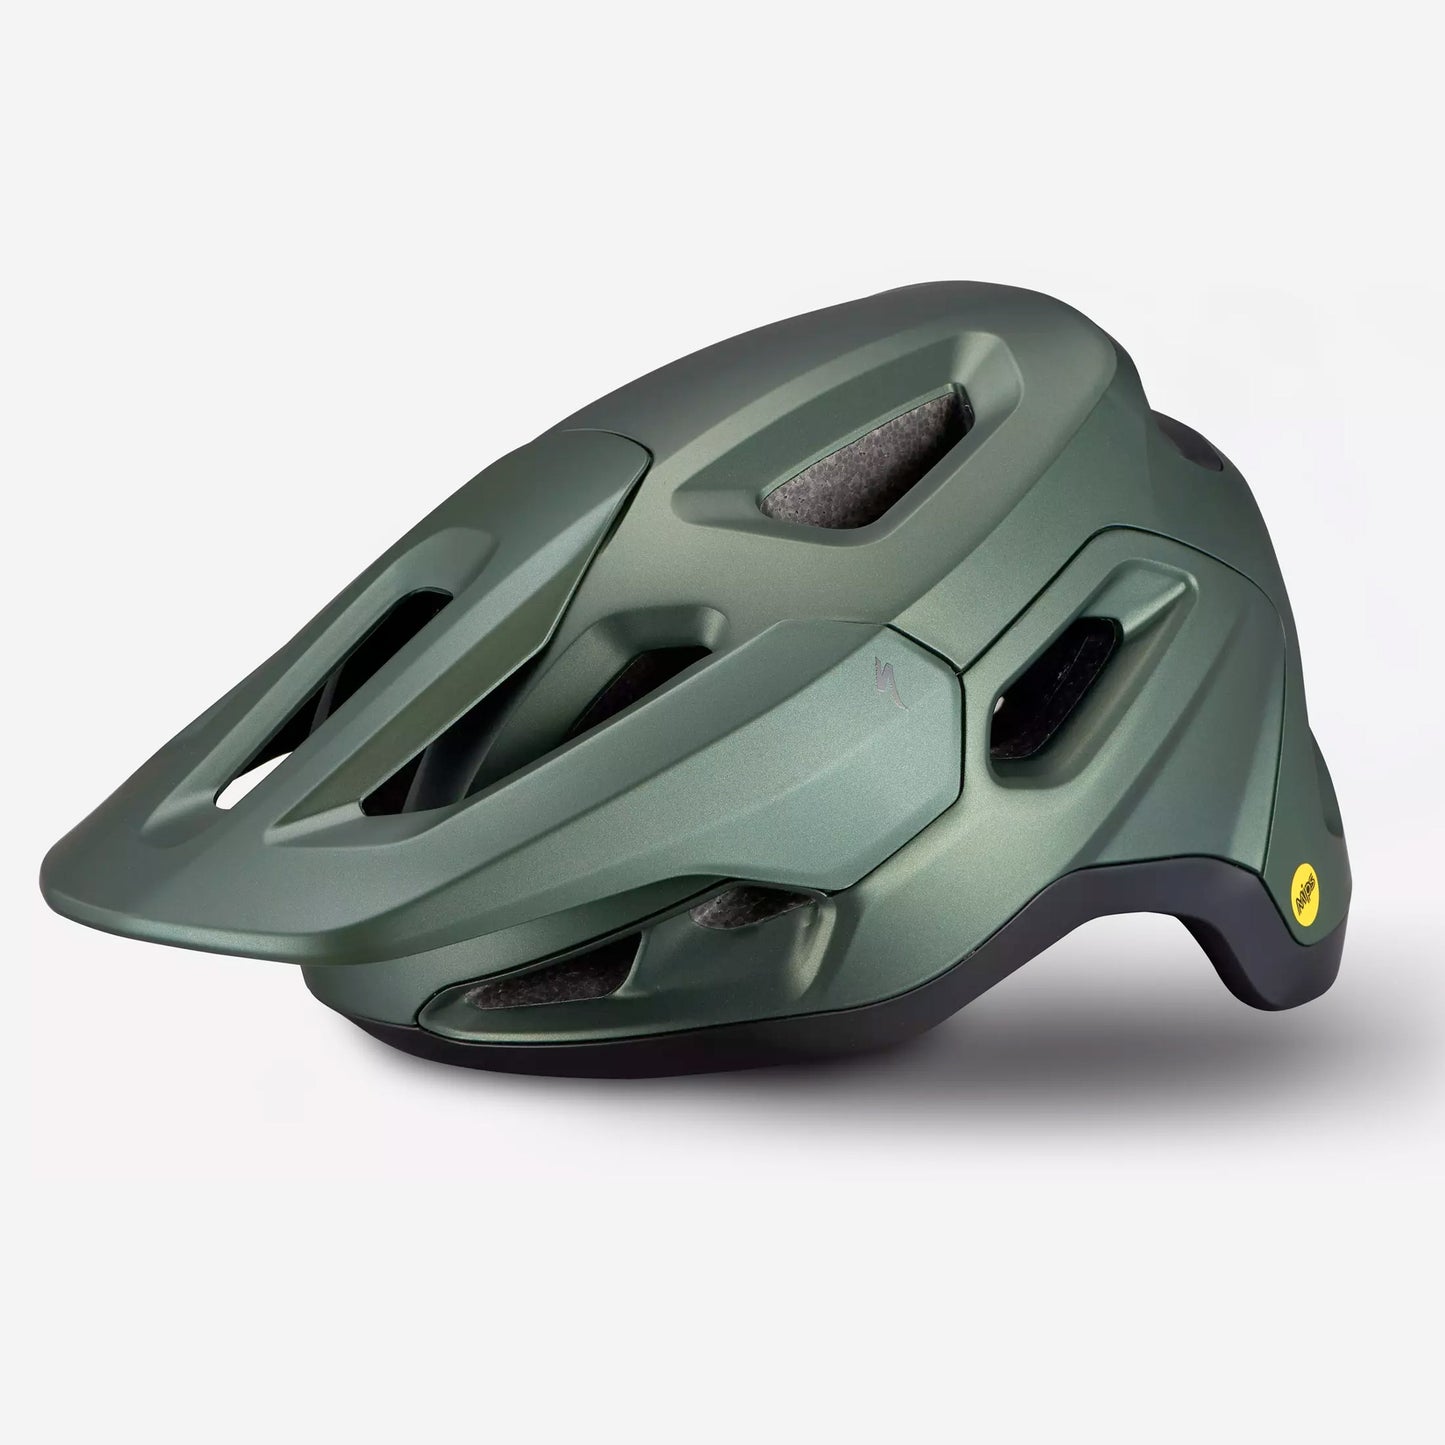 Specialized Tactic 4 Unisex Mountain Bike Helmet - Oak Green buy online Woolys Wheels Sydney